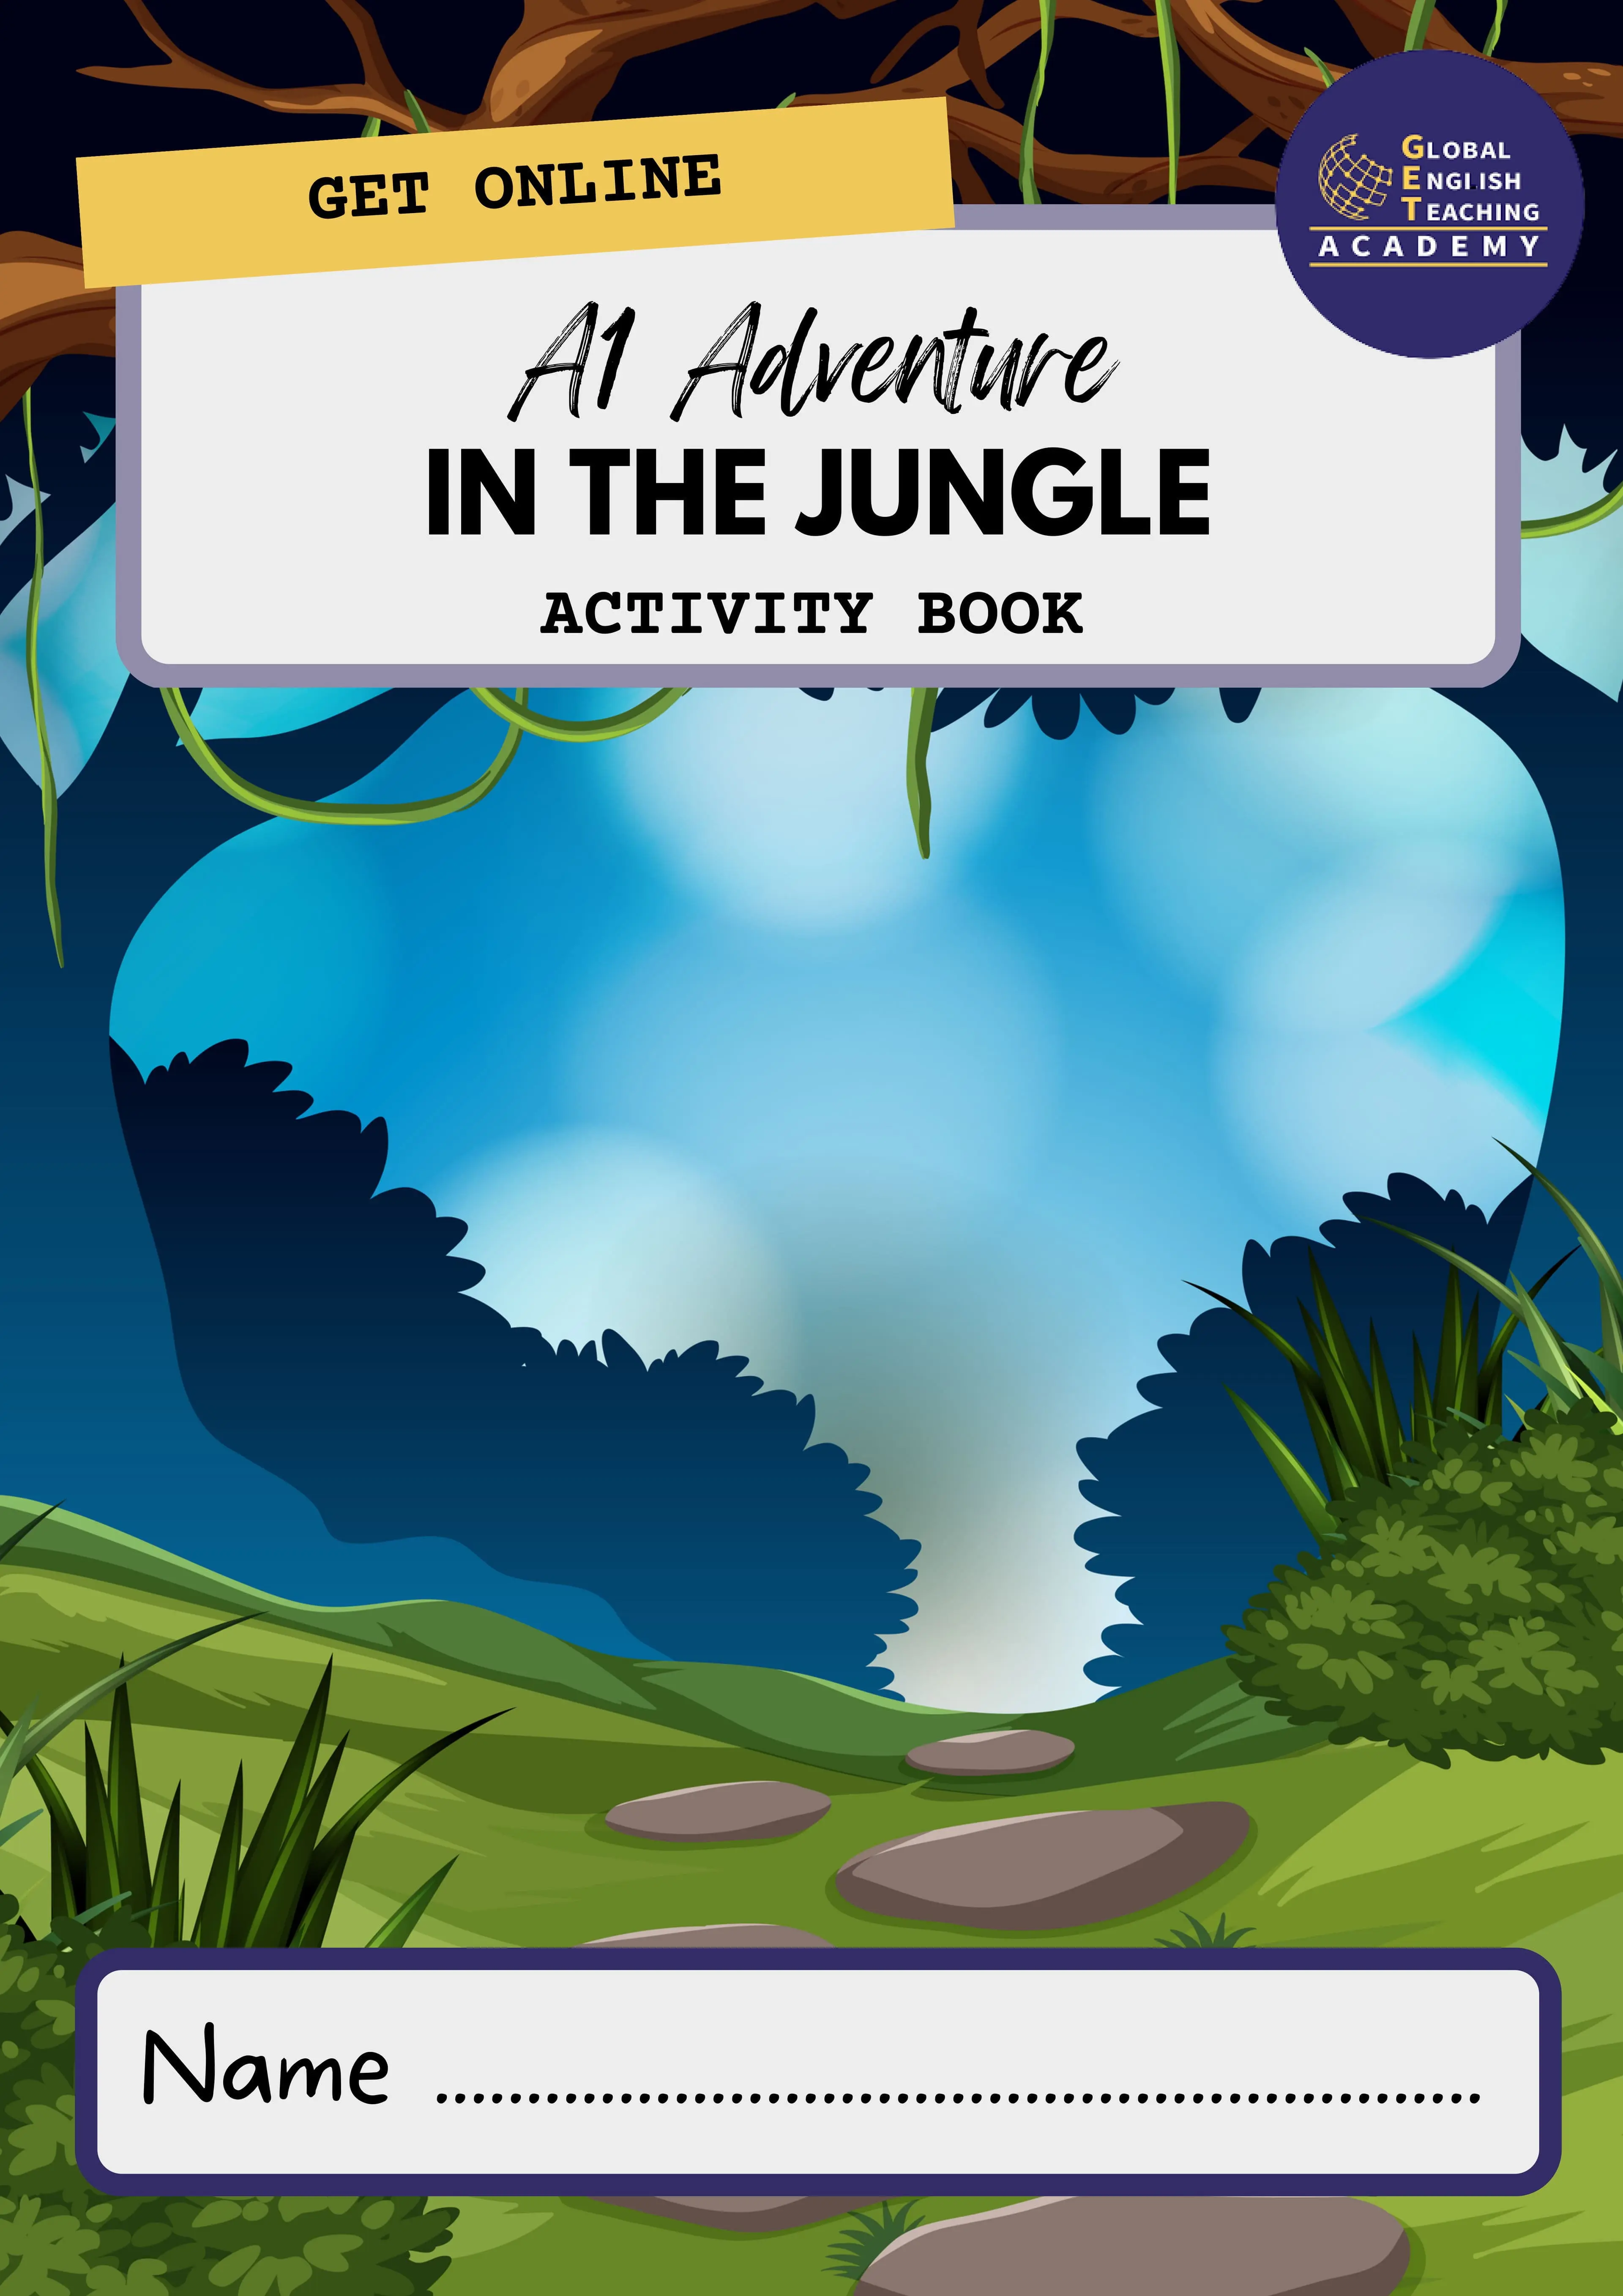 The jungle (English Edition) - eBooks em Inglês na